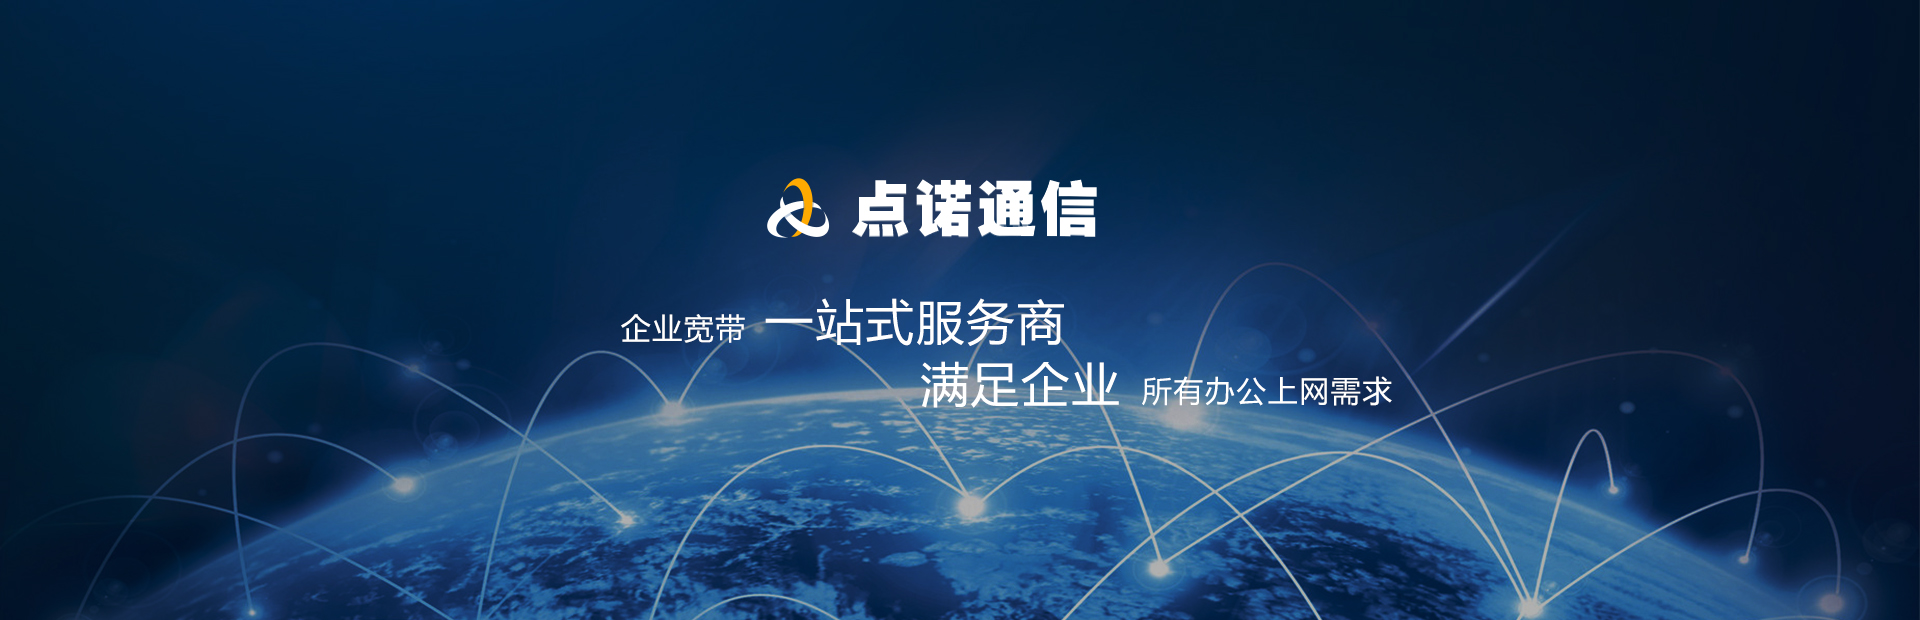 上海企业上网宽带